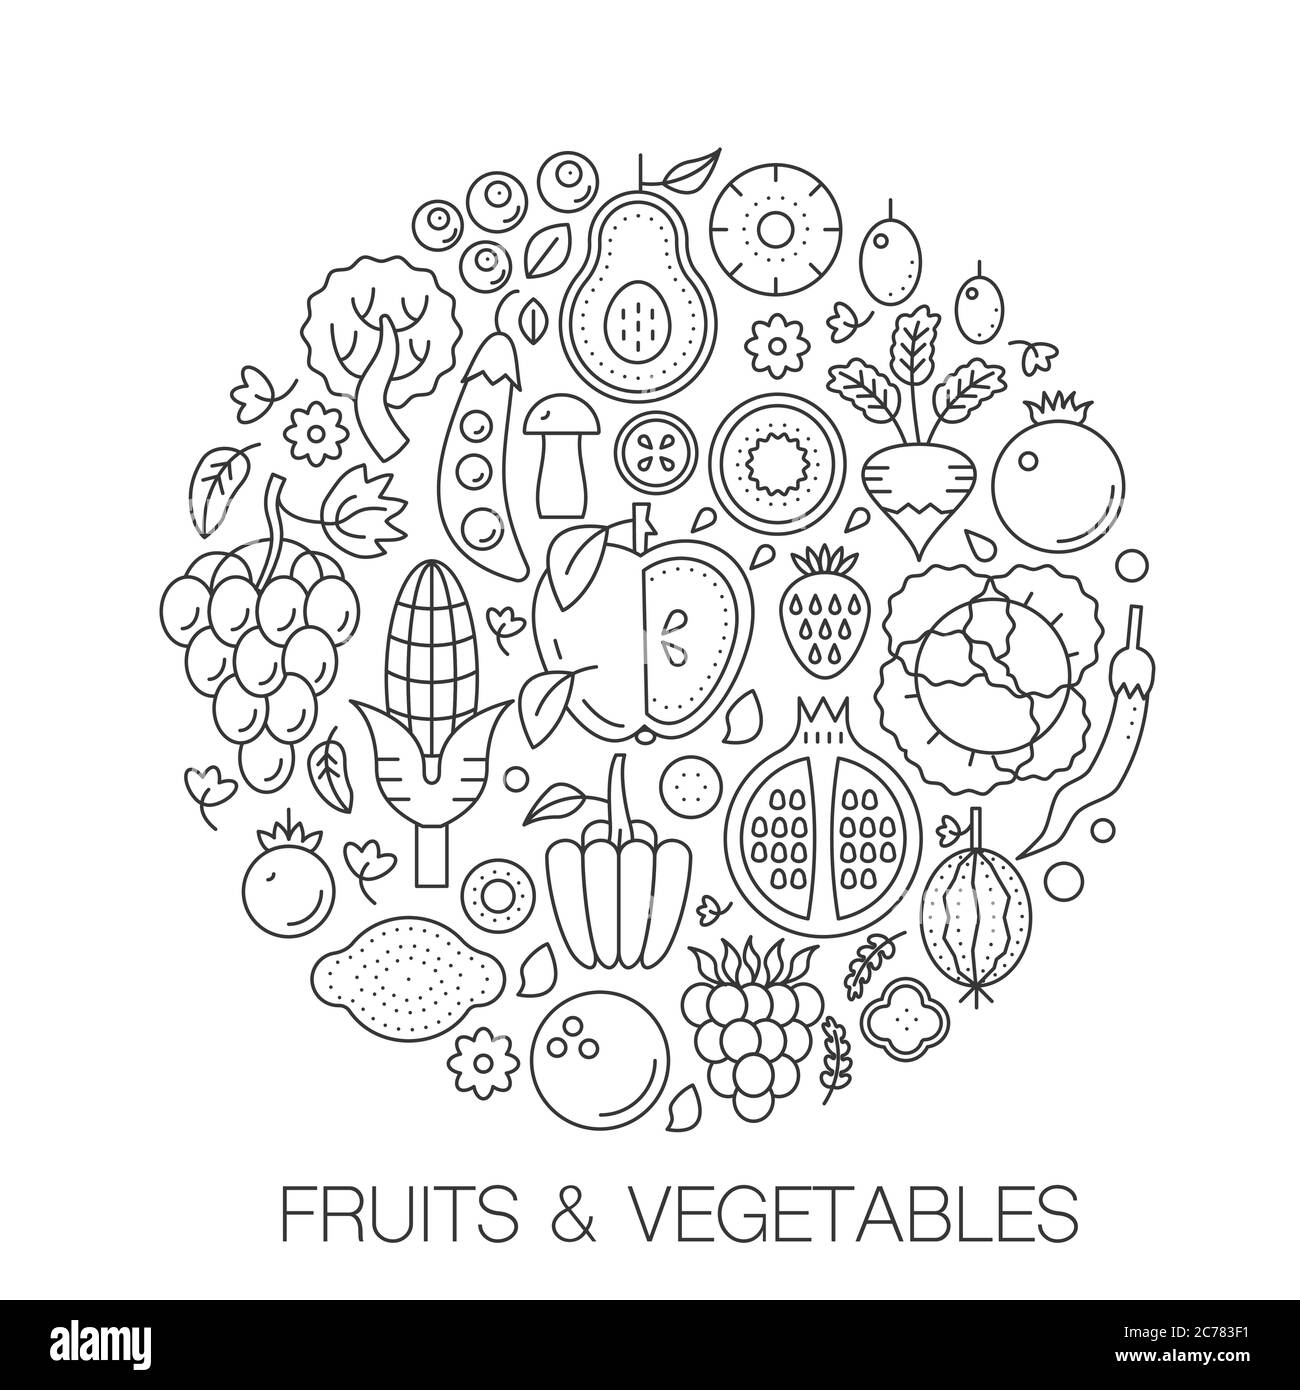 Frutta verdura in cerchio - illustrazione della linea di concetto per copertina, emblema, badge. Frutta verdura sottile linea Stroke icone. Illustrazione Vettoriale